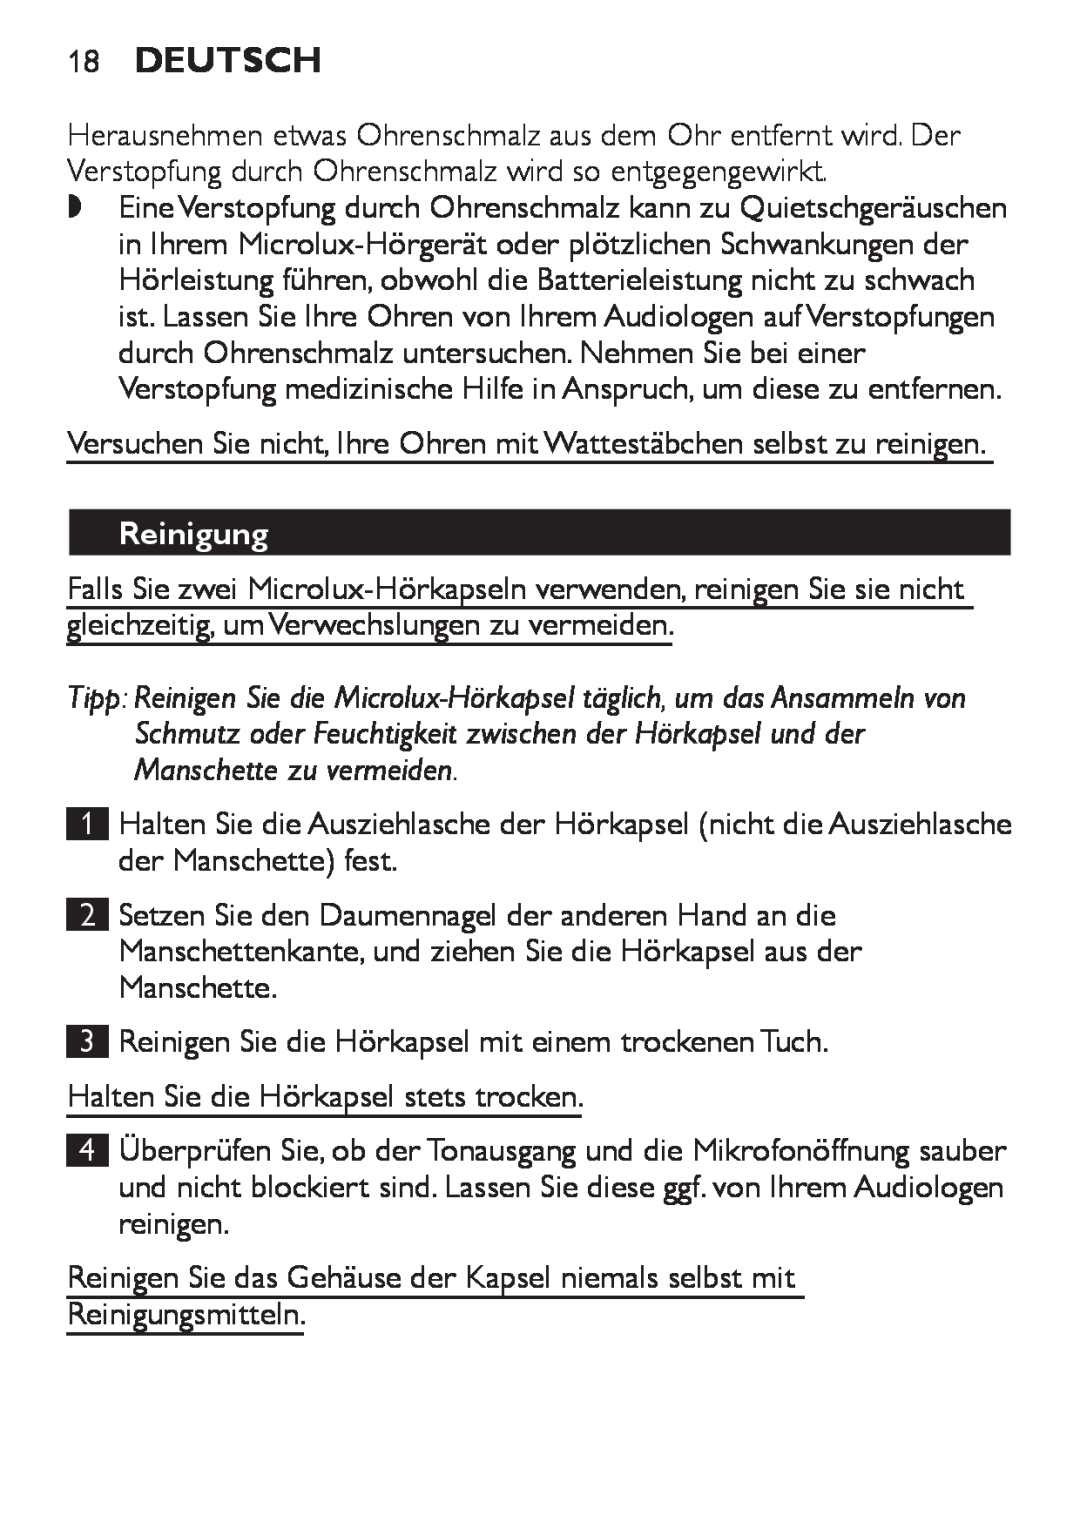 Philips HC8900 user manual 18Deutsch, Reinigung, 1 2 3 